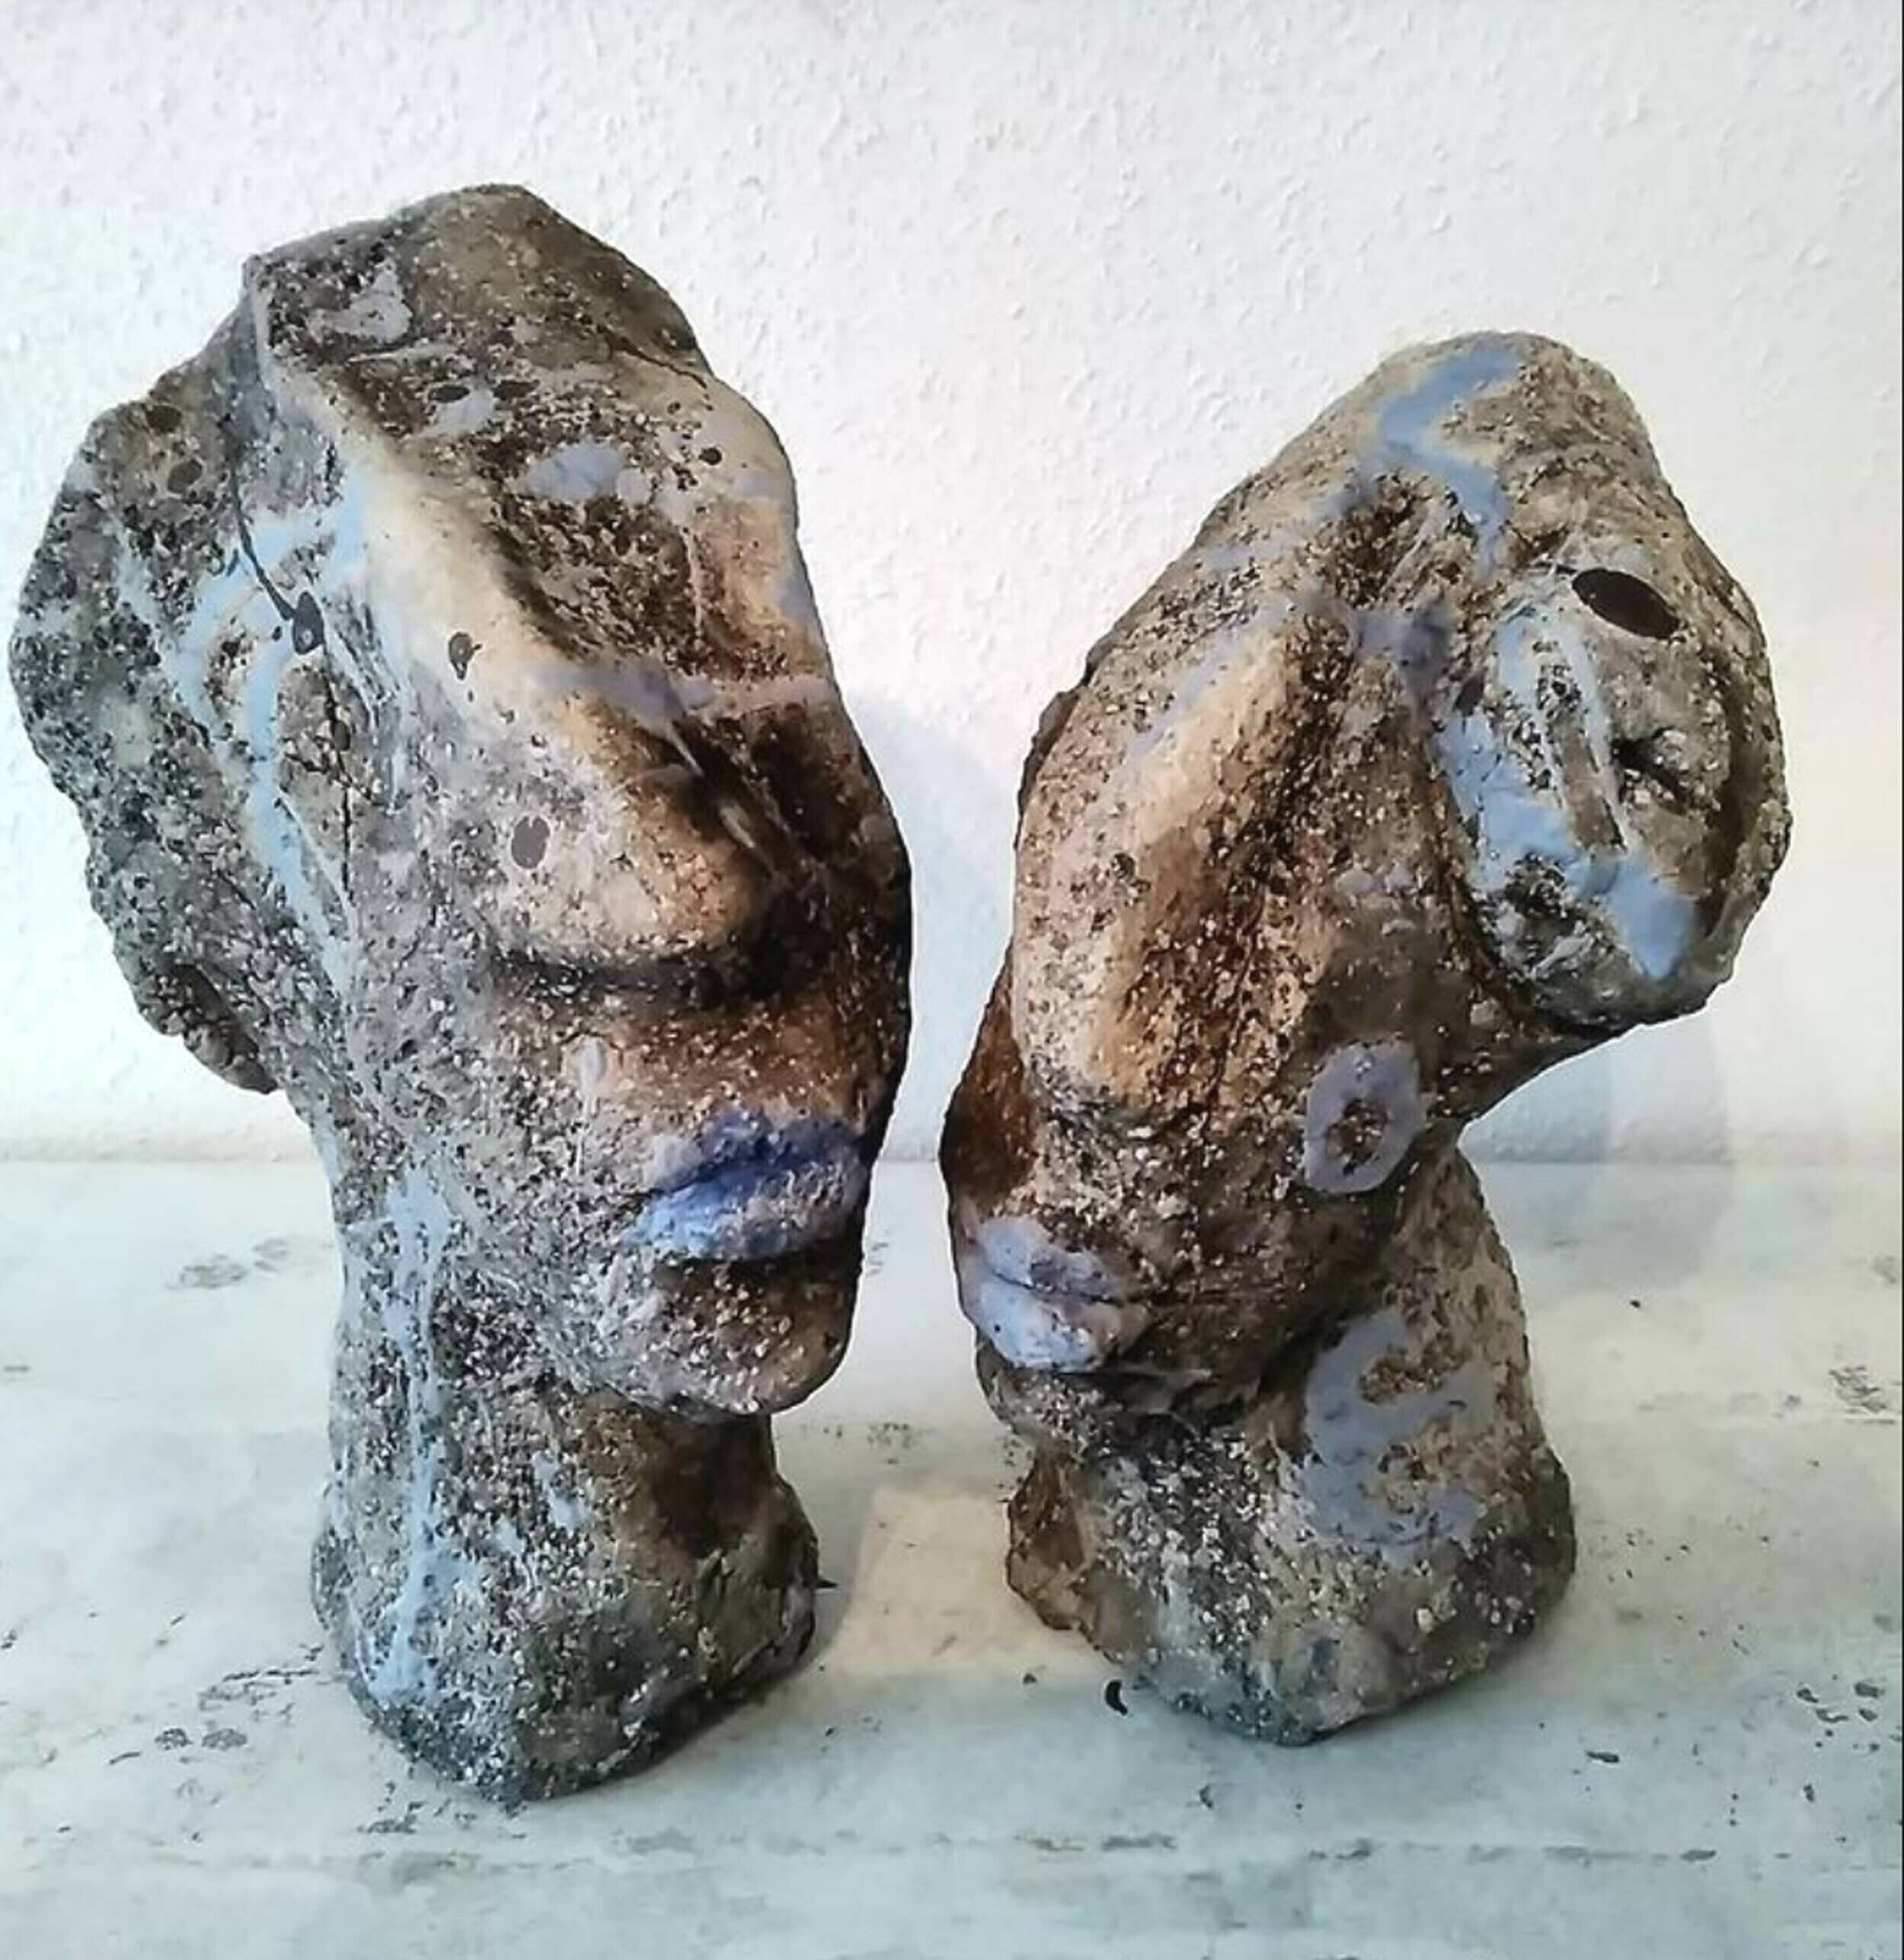 Sculpture "We belong together" (2019)